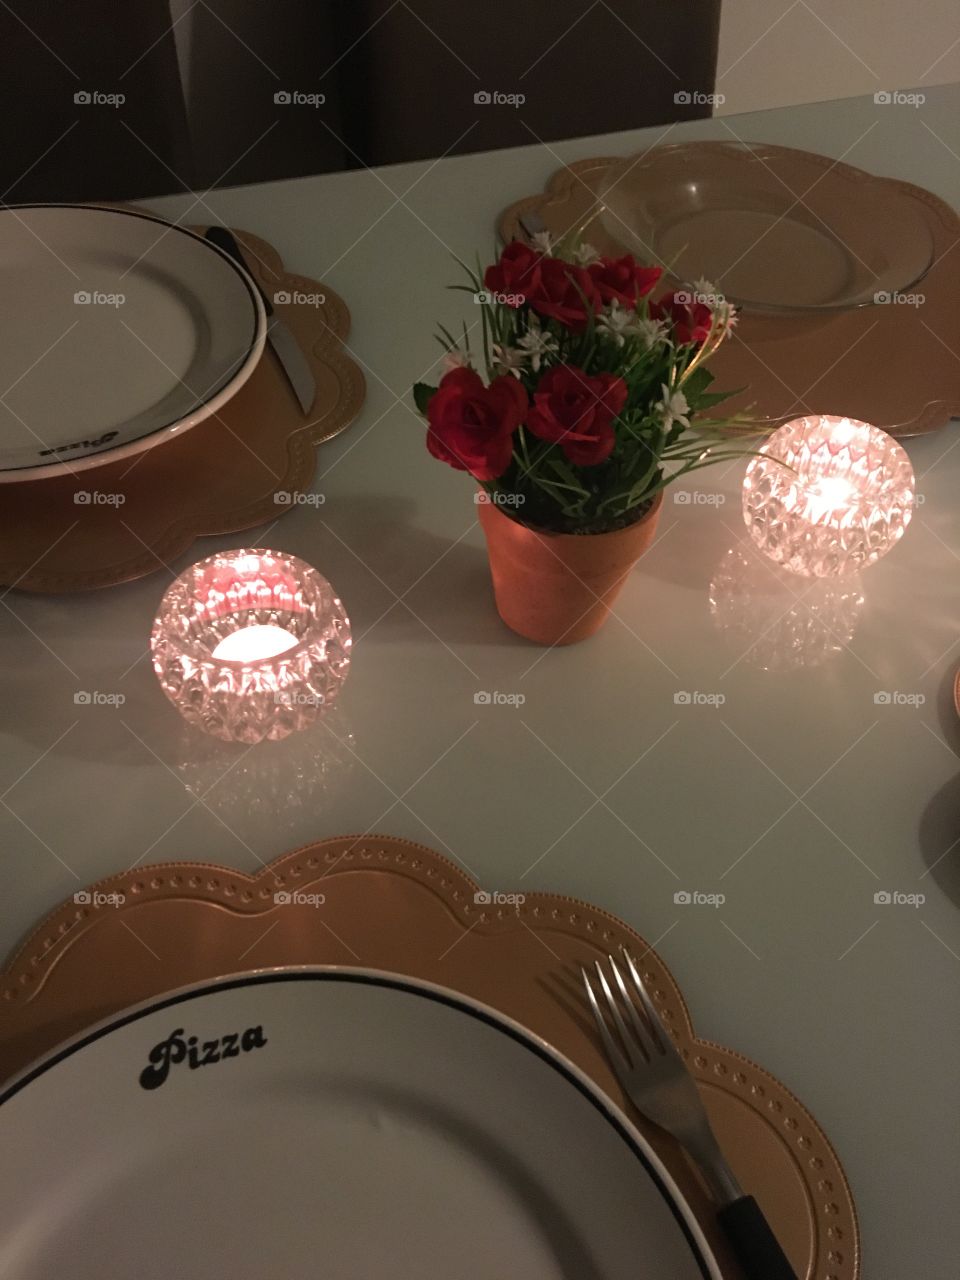 Jantar romântico a luz de velas.. comemoração do aniversário de casamento